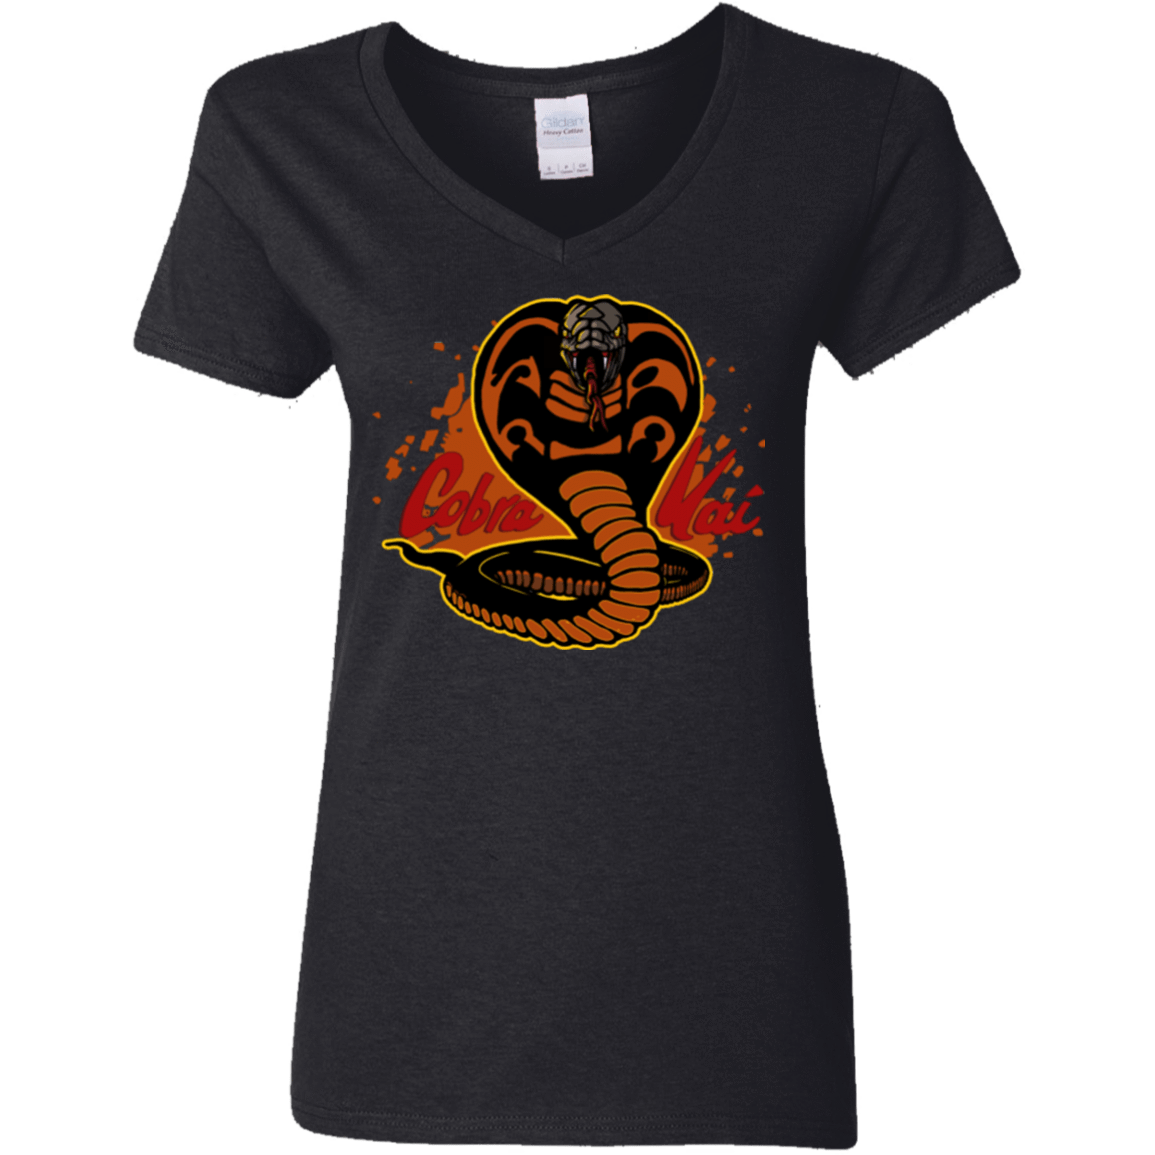 T-Shirts Black / S Familiar Reptile Women's V-Neck T-Shirt